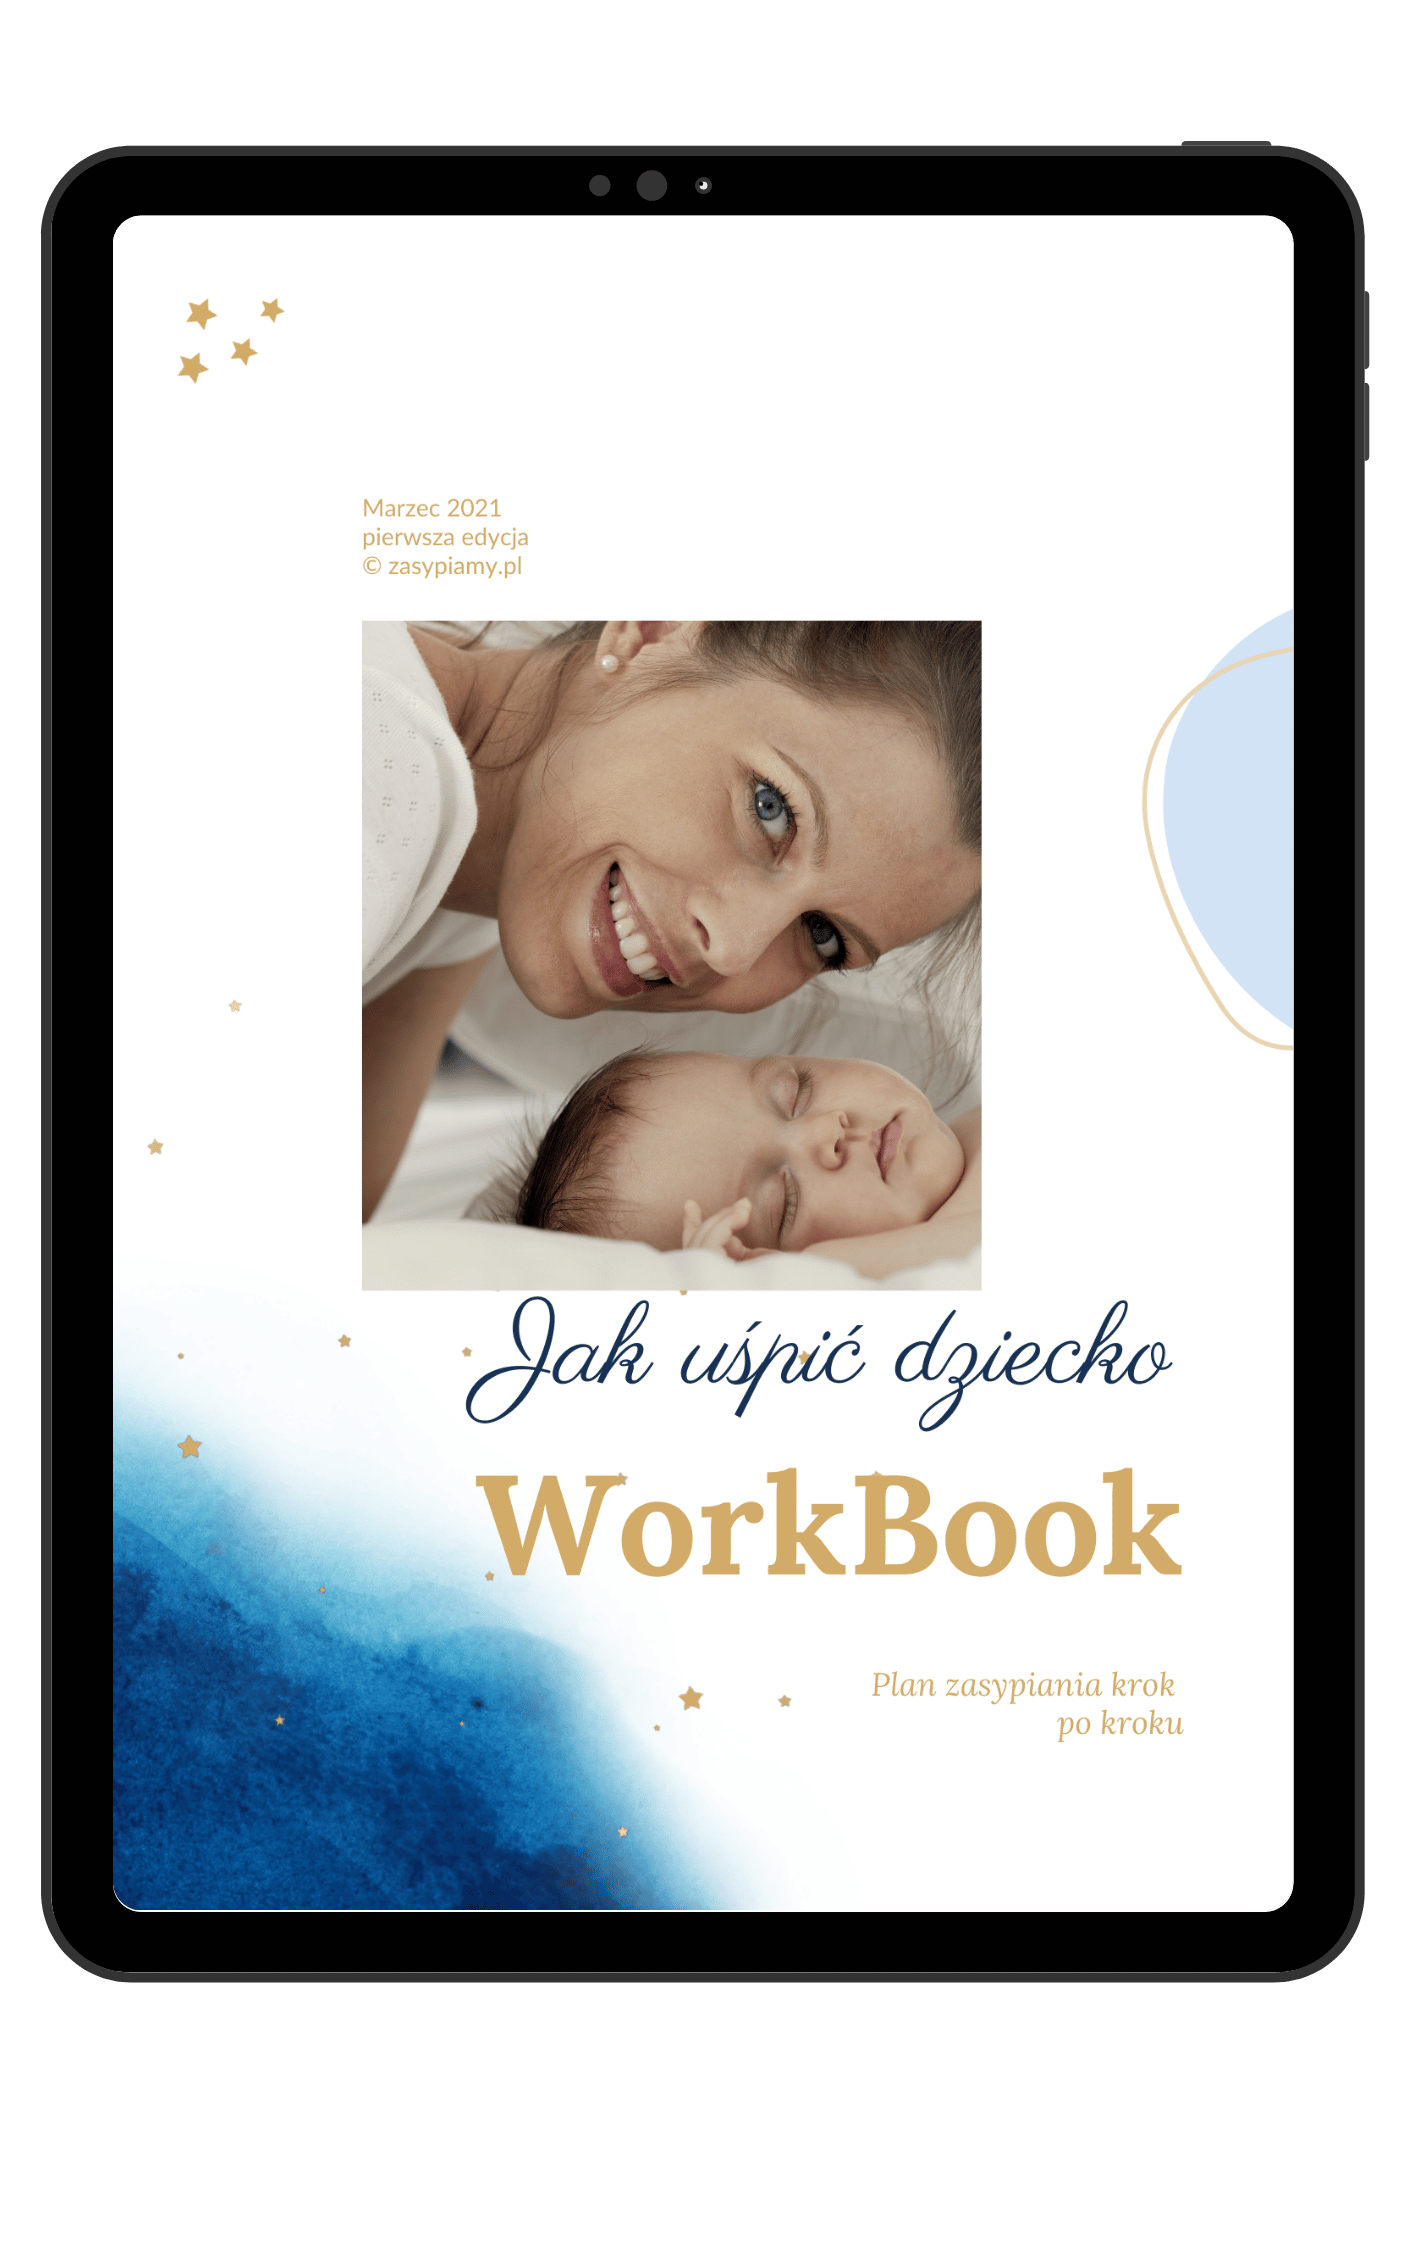 workbook jak uspic dziecko usypianie niemowlat